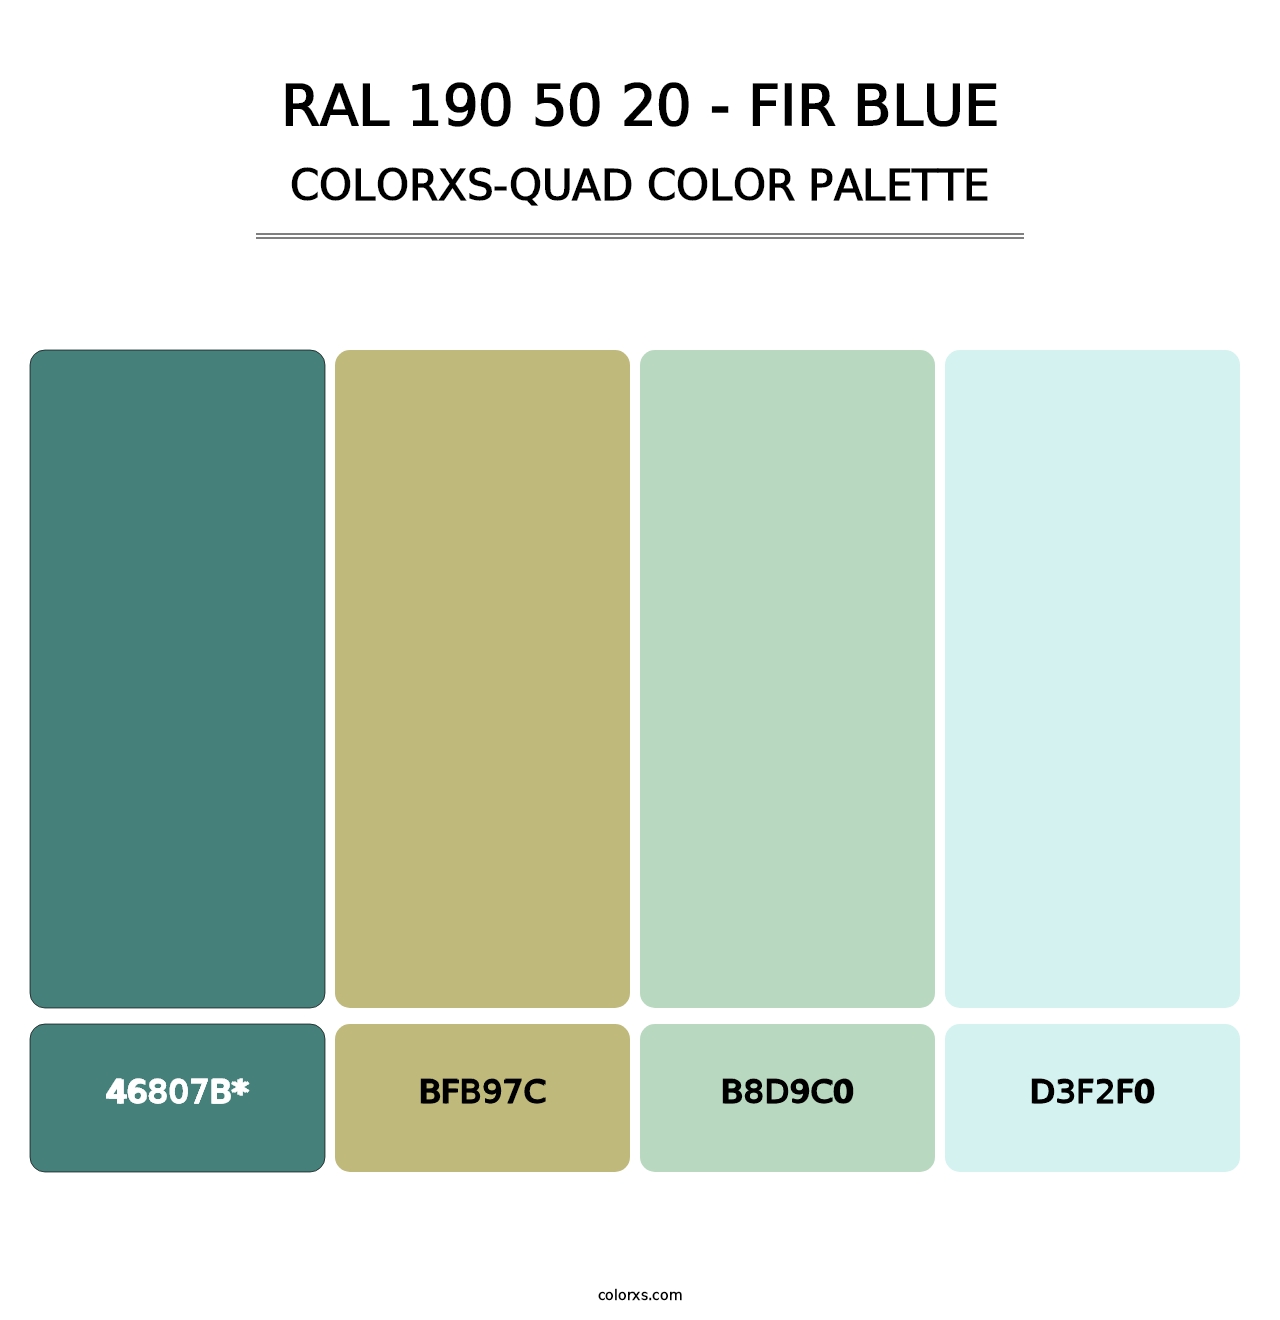 RAL 190 50 20 - Fir Blue - Colorxs Quad Palette